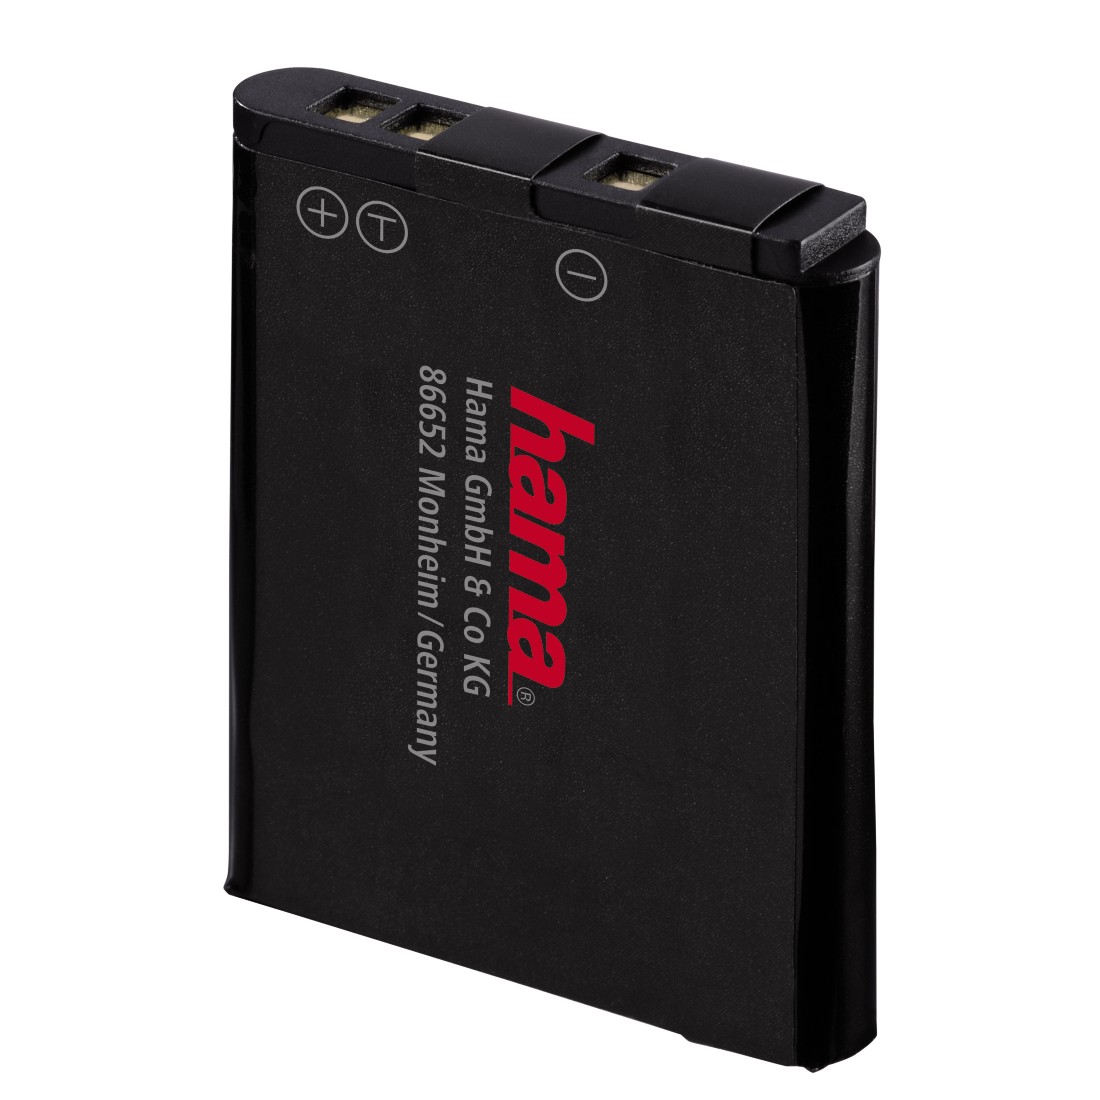 Hama Dp 395 Lithium Ion Battery For Nikon En El19 Hama Com